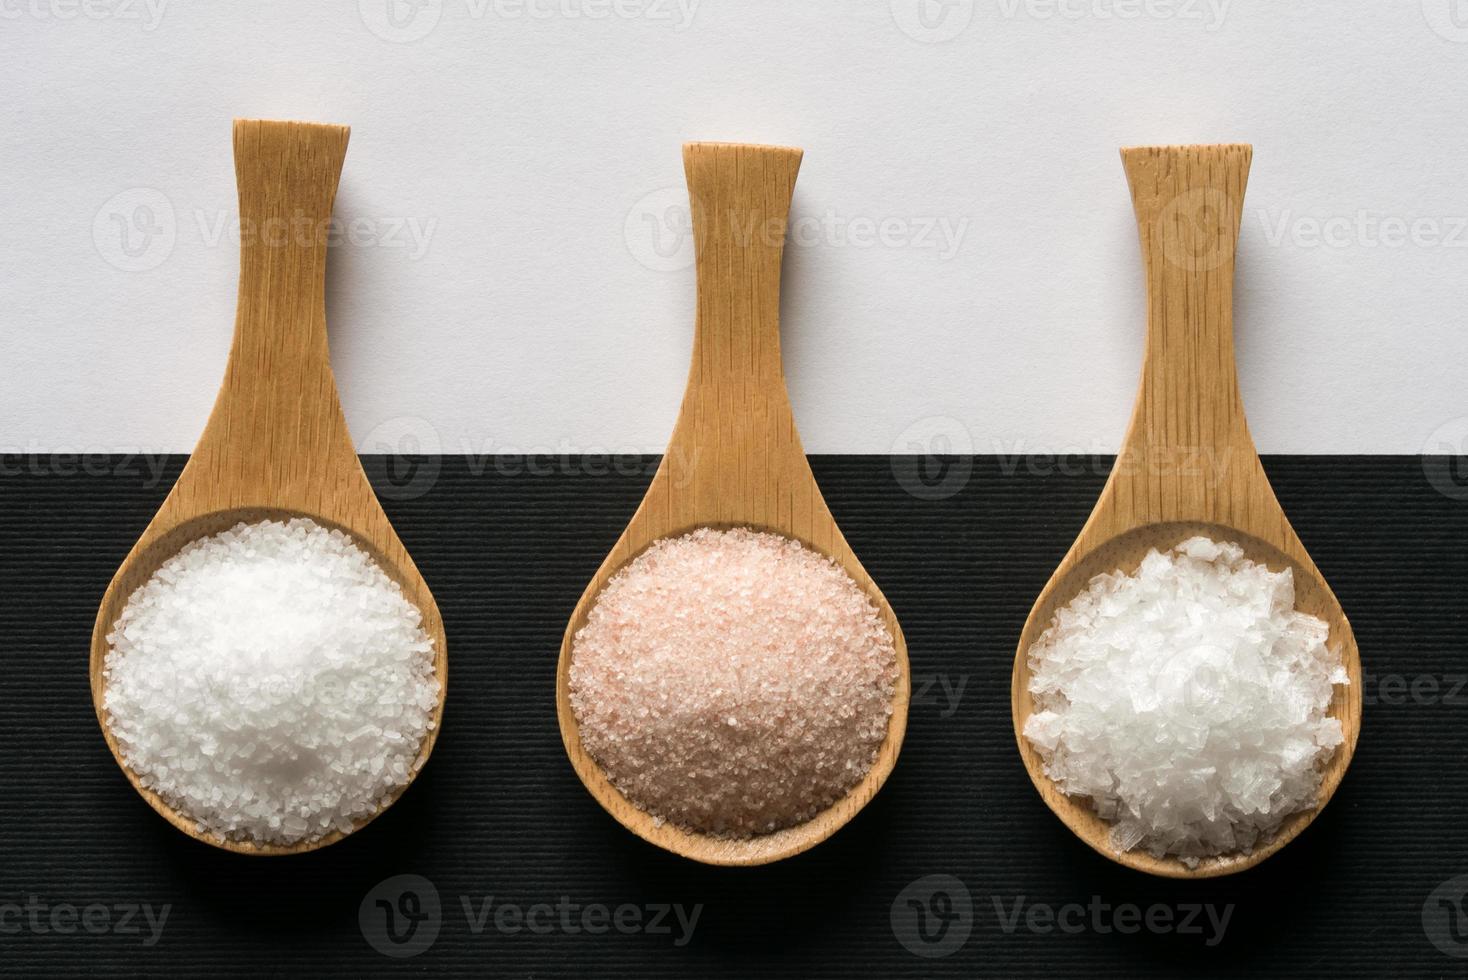 koosjer zout, himalayan zout, en zee zout vlokken foto